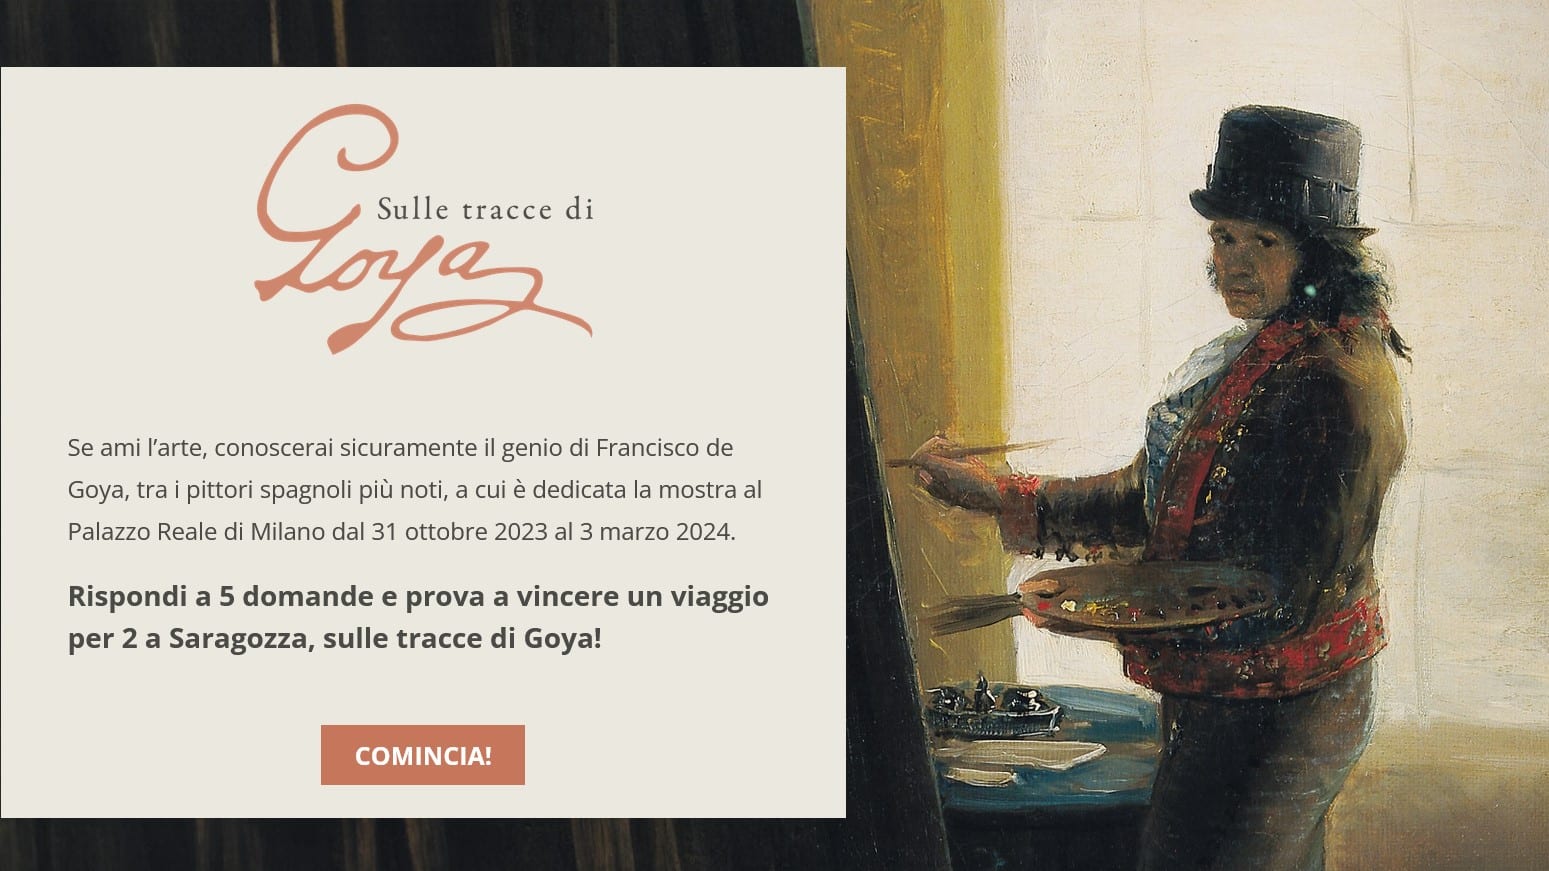 Vinci GRATIS un viaggio a Saragozza sulle tracce di Goya